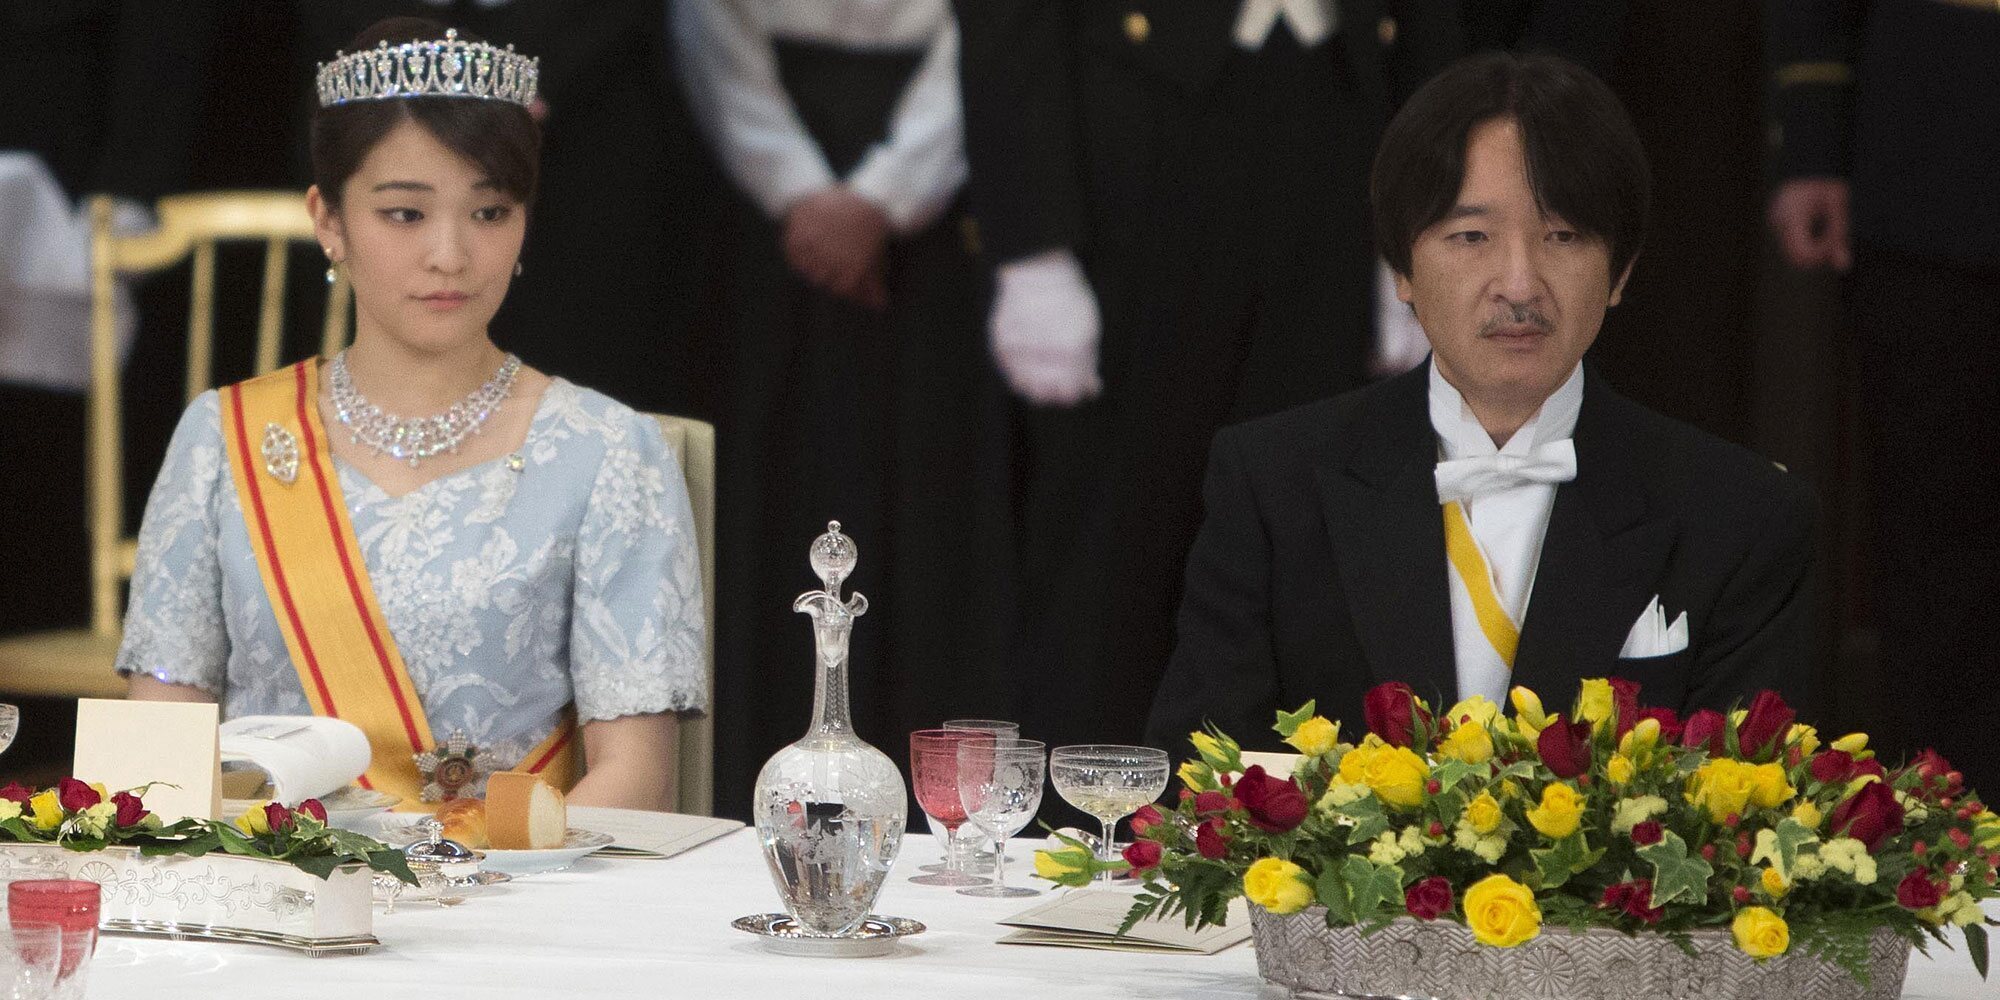 Los planes de Akishino de Japón para modernizar la Monarquía que no incluyen cambiar lo que le benefició y perjudicó a Mako